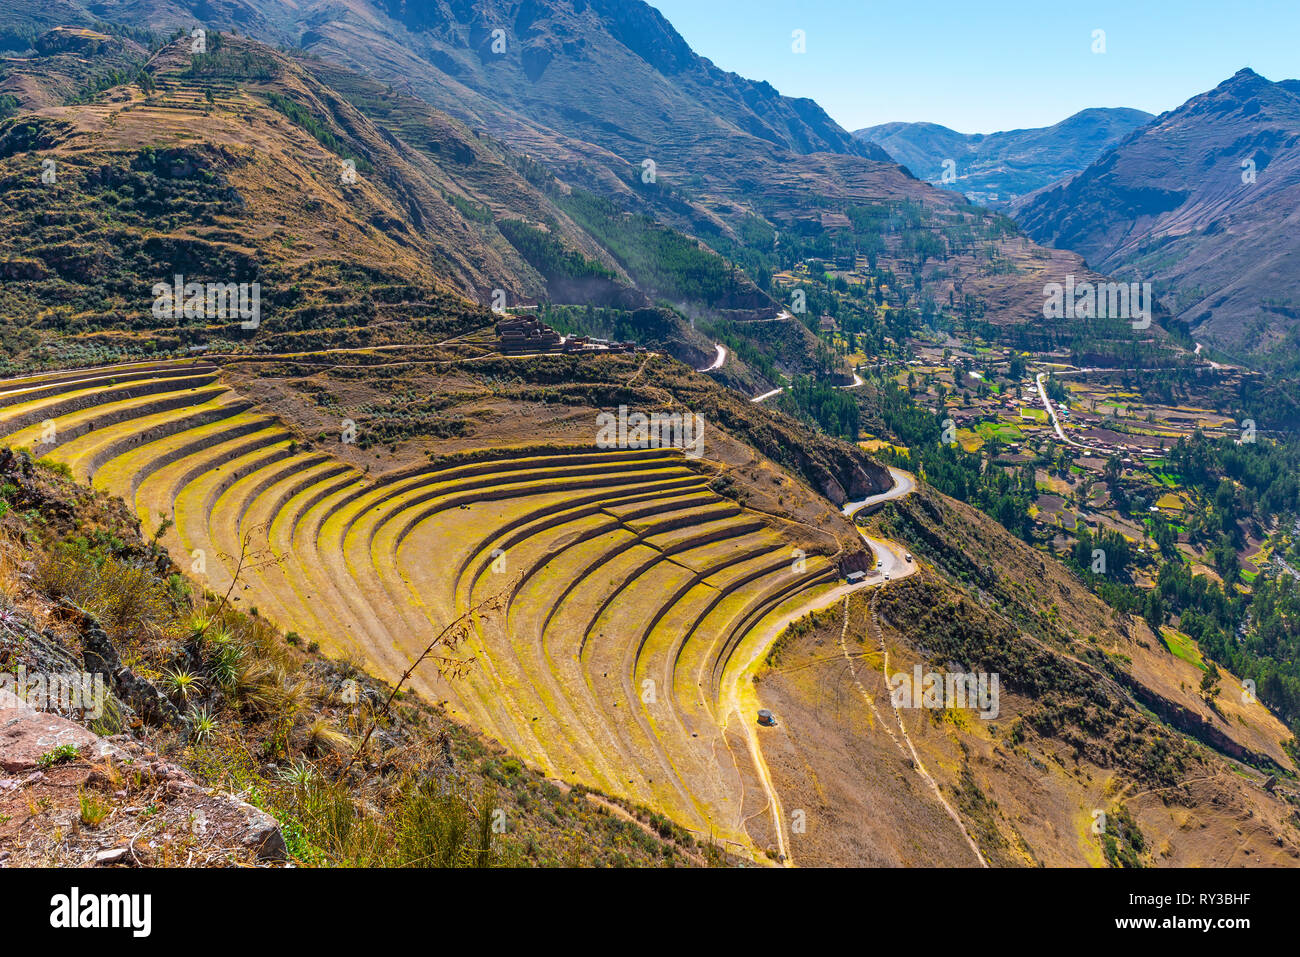 El gigantesco yacimiento arqueológico de Pisac con el famoso campo de terrazas para la agricultura en el Valle Sagrado de los Incas cerca de Cusco, Perú. Foto de stock